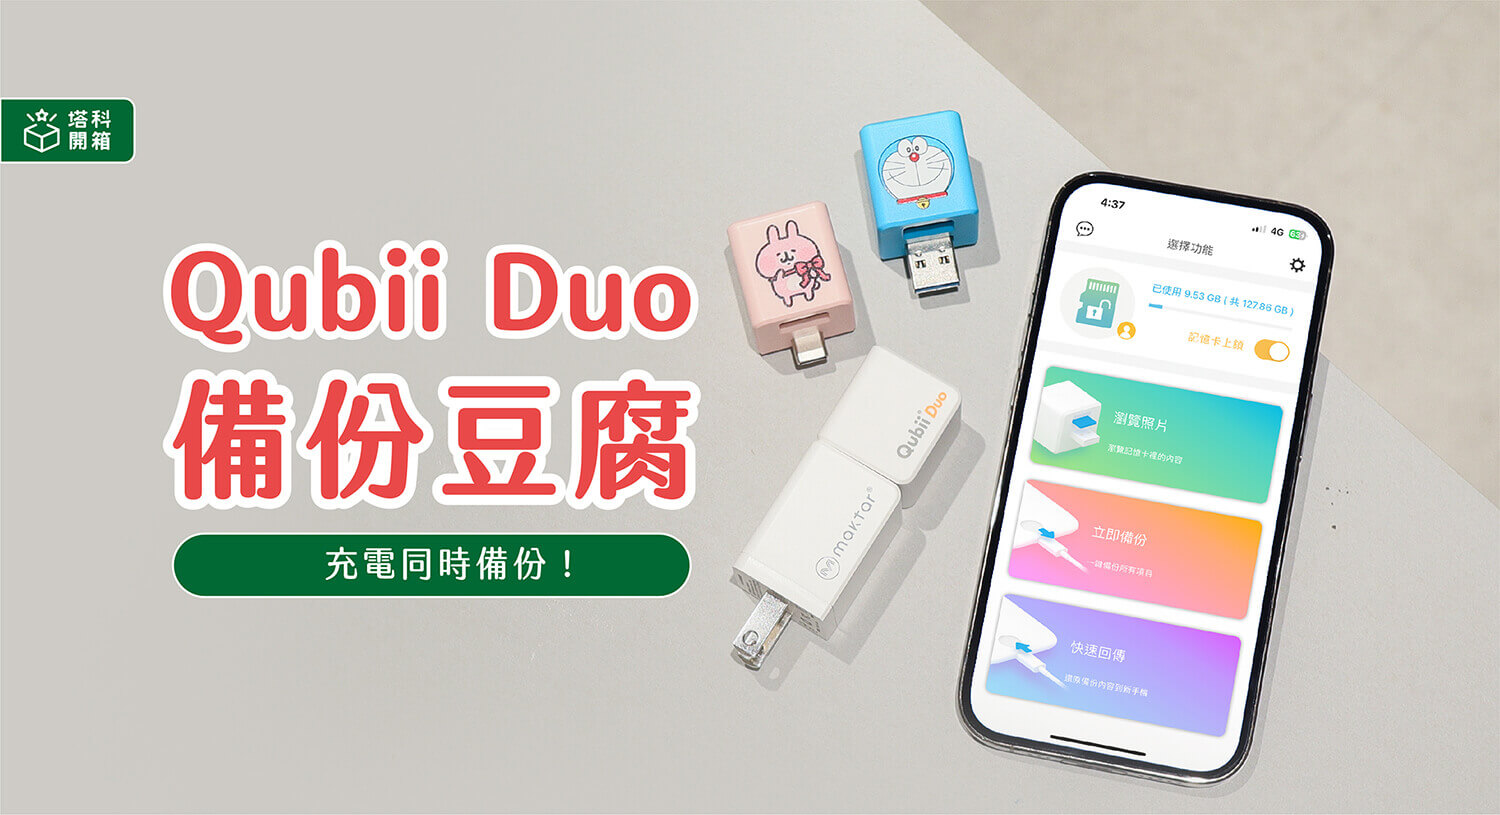 【開箱評測】Qubii Duo 雙用備份豆腐：充電即備份超簡單 (iOS / Android 雙機適用)